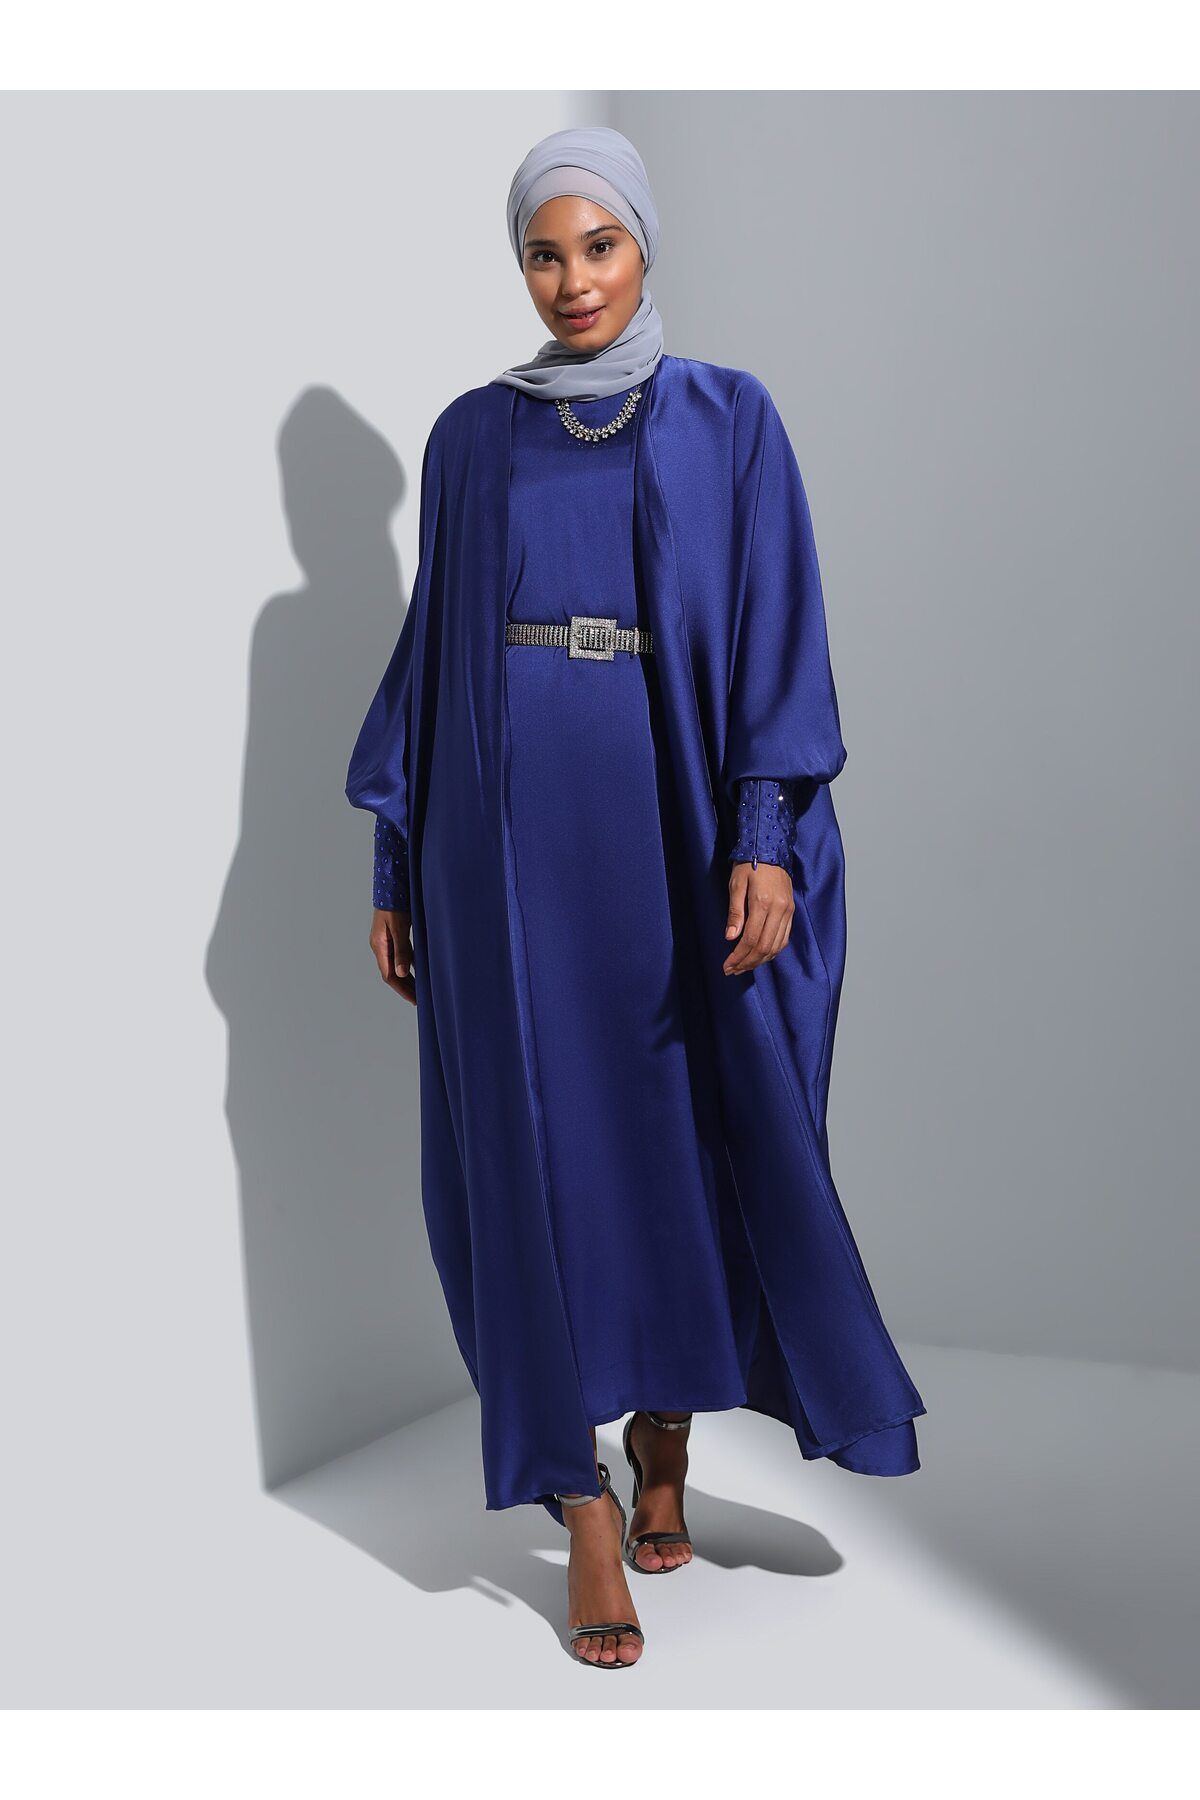 Refka Kolları Taş Detaylı Saten Elbise&Ferace İkili Abiye Takım - Lacivert - Refka